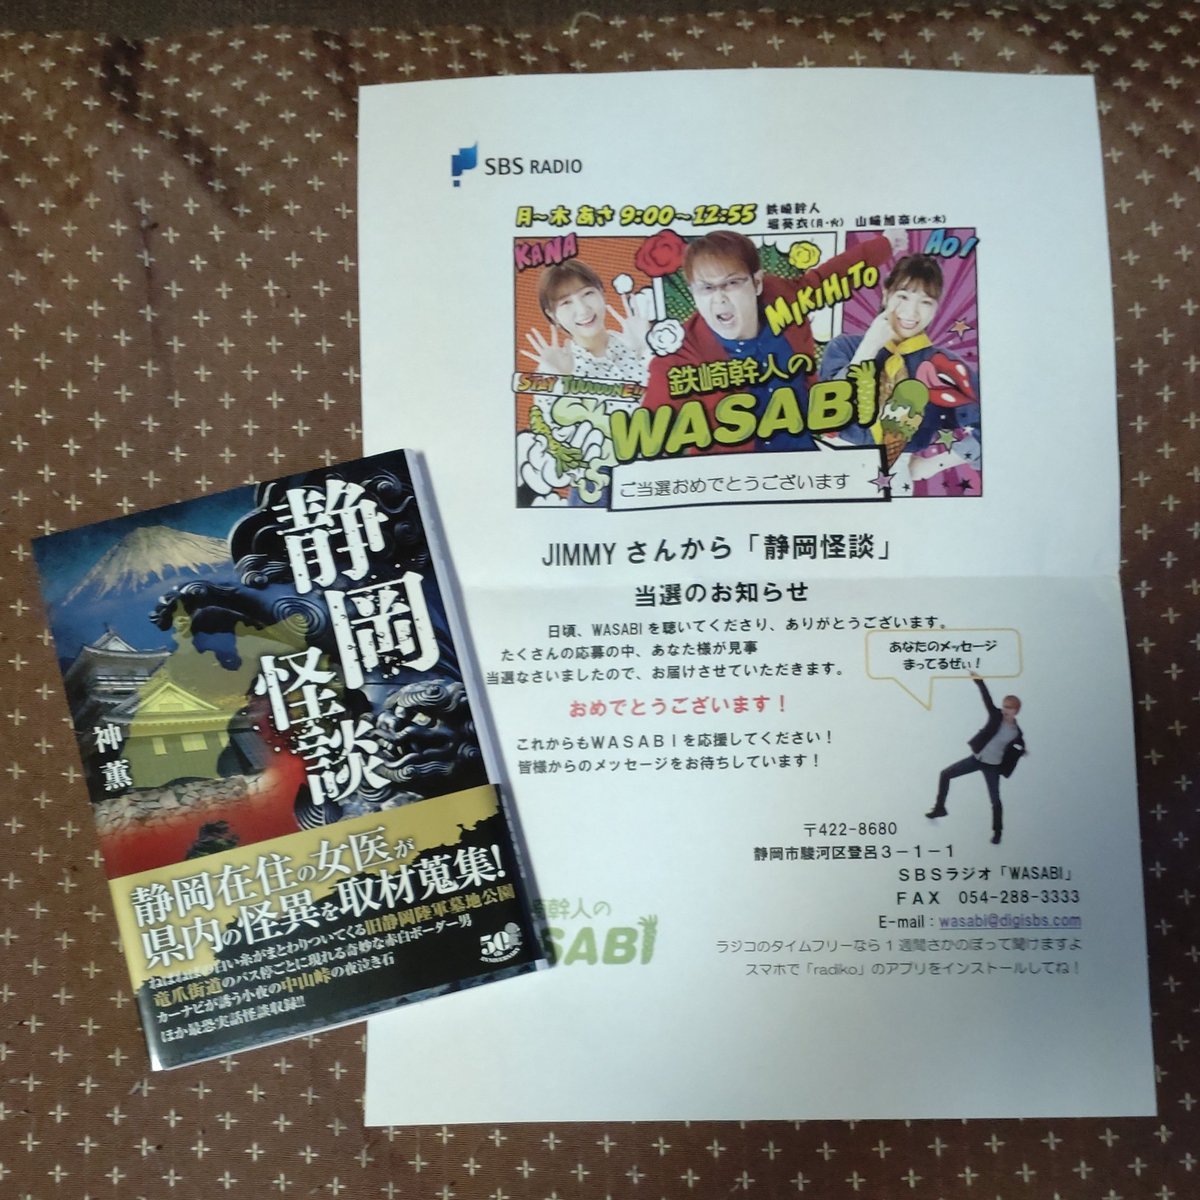 帰ったら #WASABI から封書が
何かなぁ?と思ったら #神薫 @joyblog さんの #静岡階段 が!
ありがとうございます! 